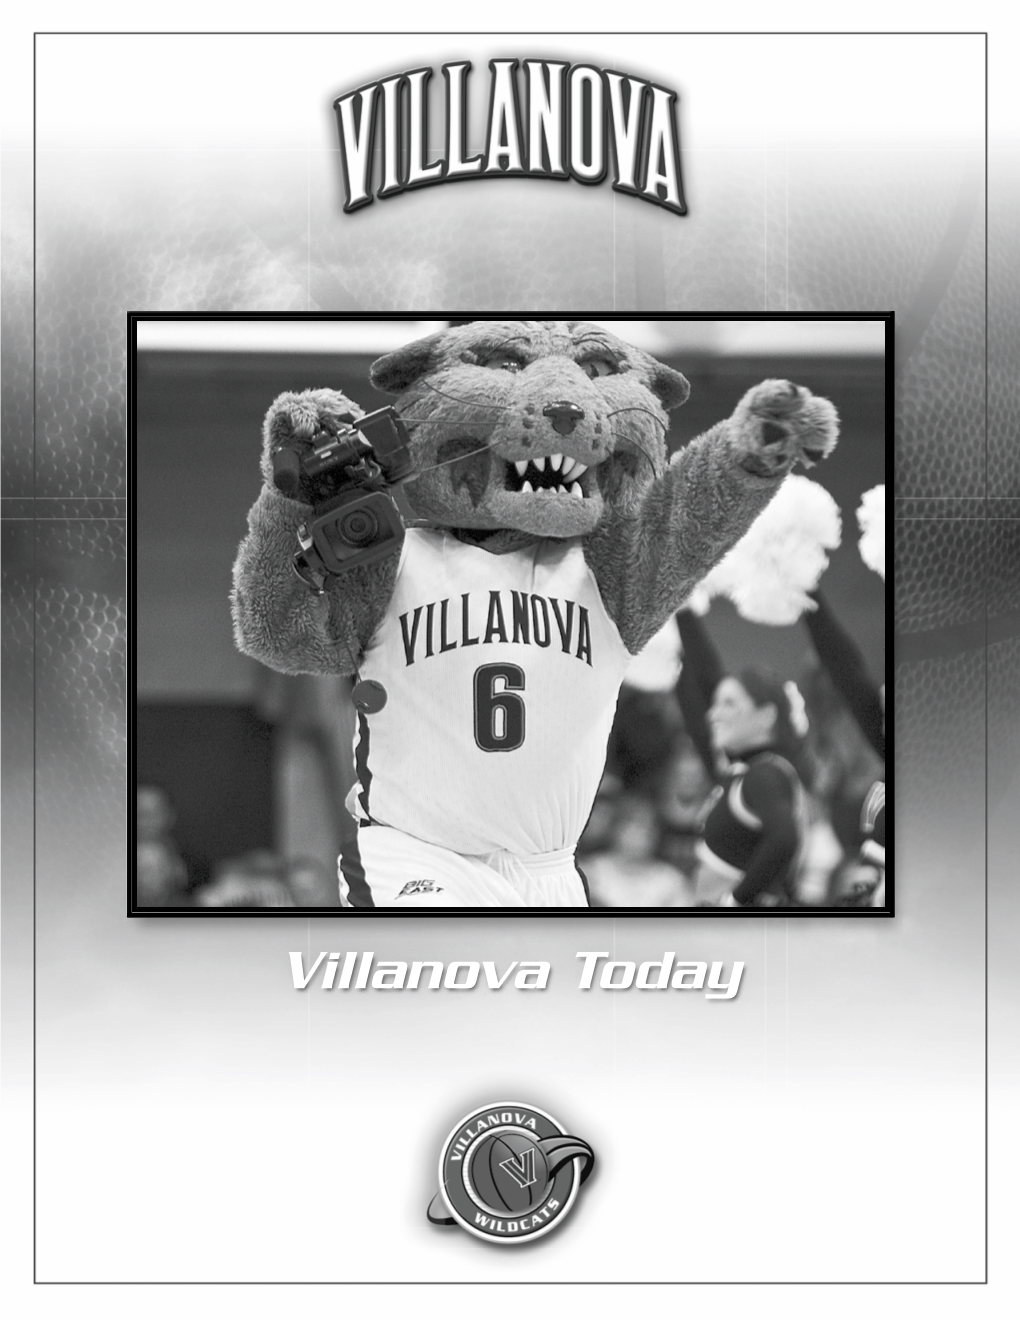 Villanova Today 2009-10 Villanova Basketball